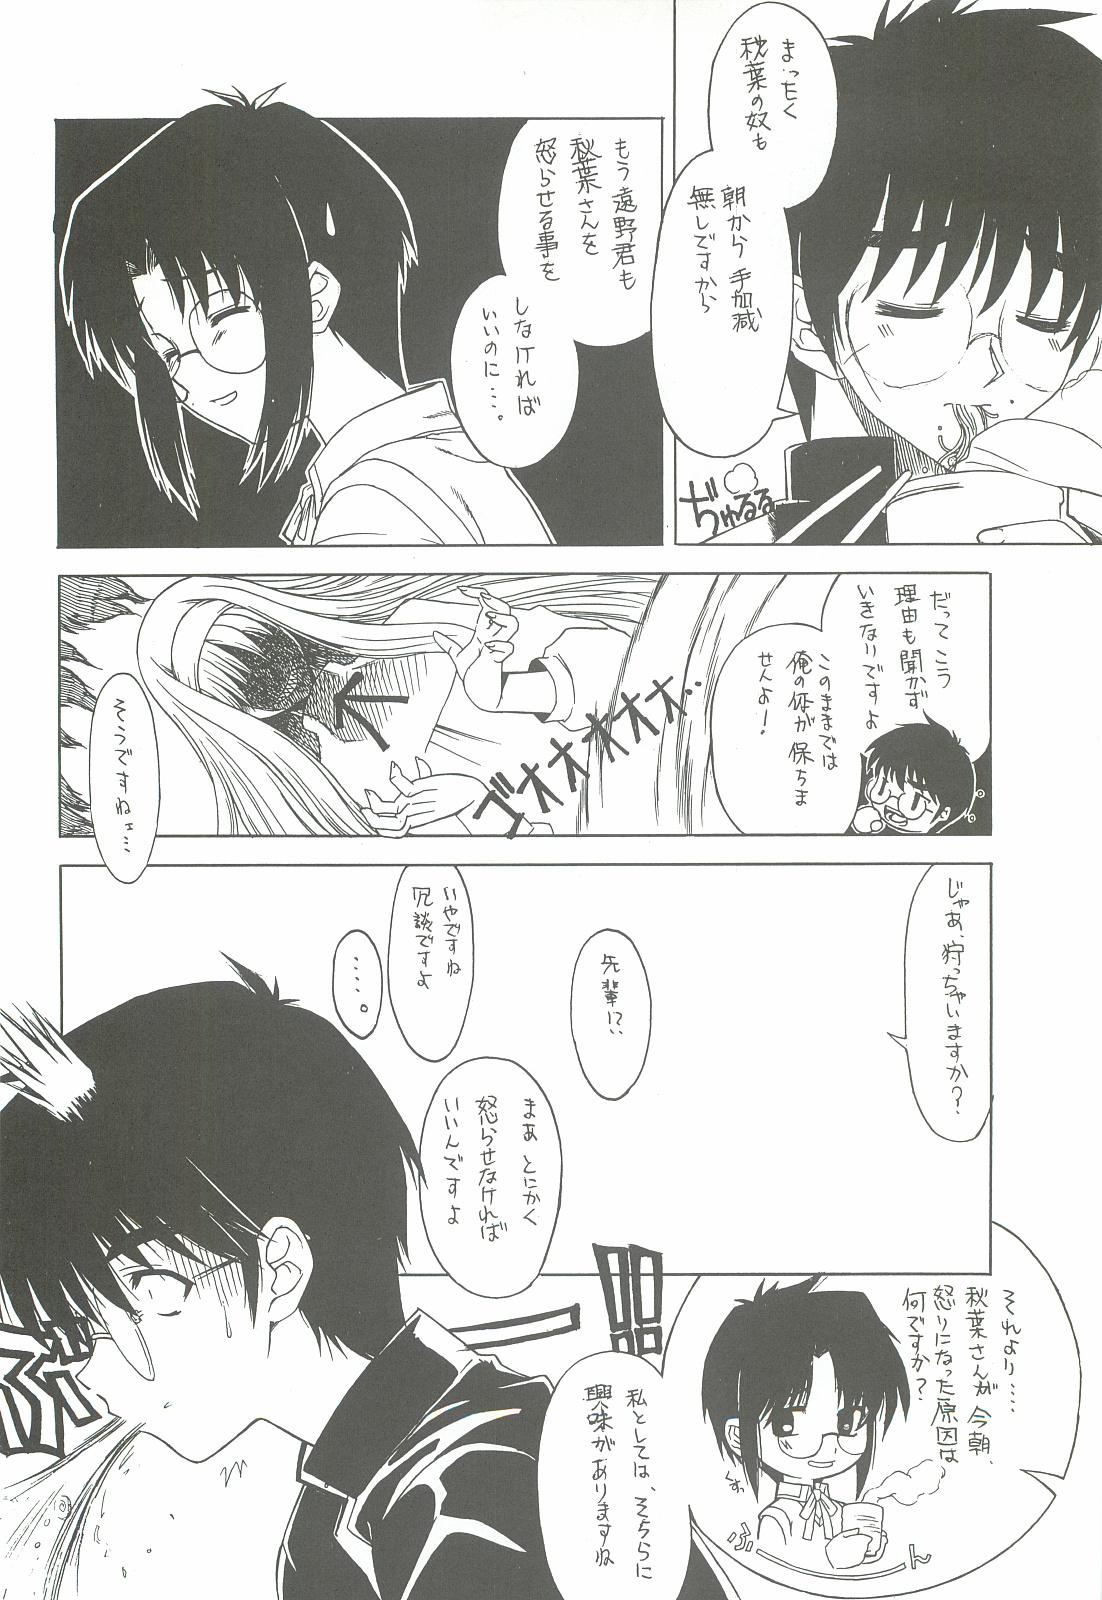 Mofos Sougetsu no Kimi Eien no Getsukan - Tsukihime Fake Tits - Page 11